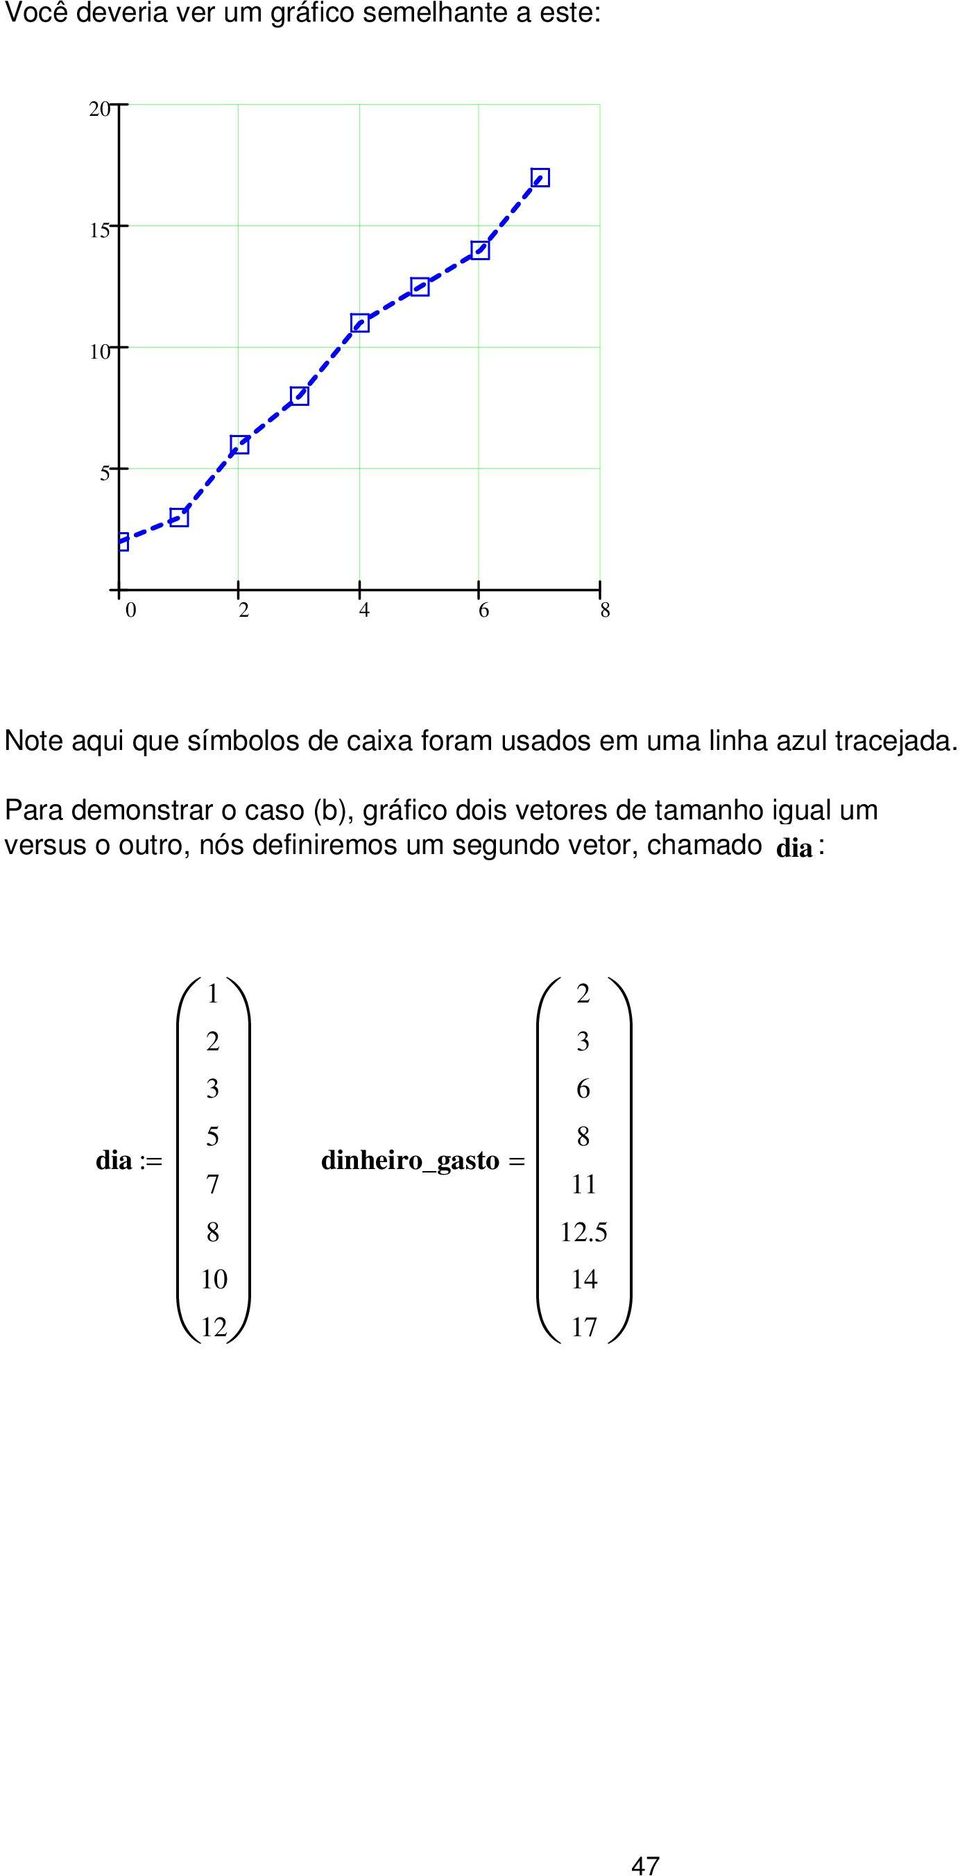 Para demonstrar o caso (b), gráfico dois vetores de tamanho igual um versus o